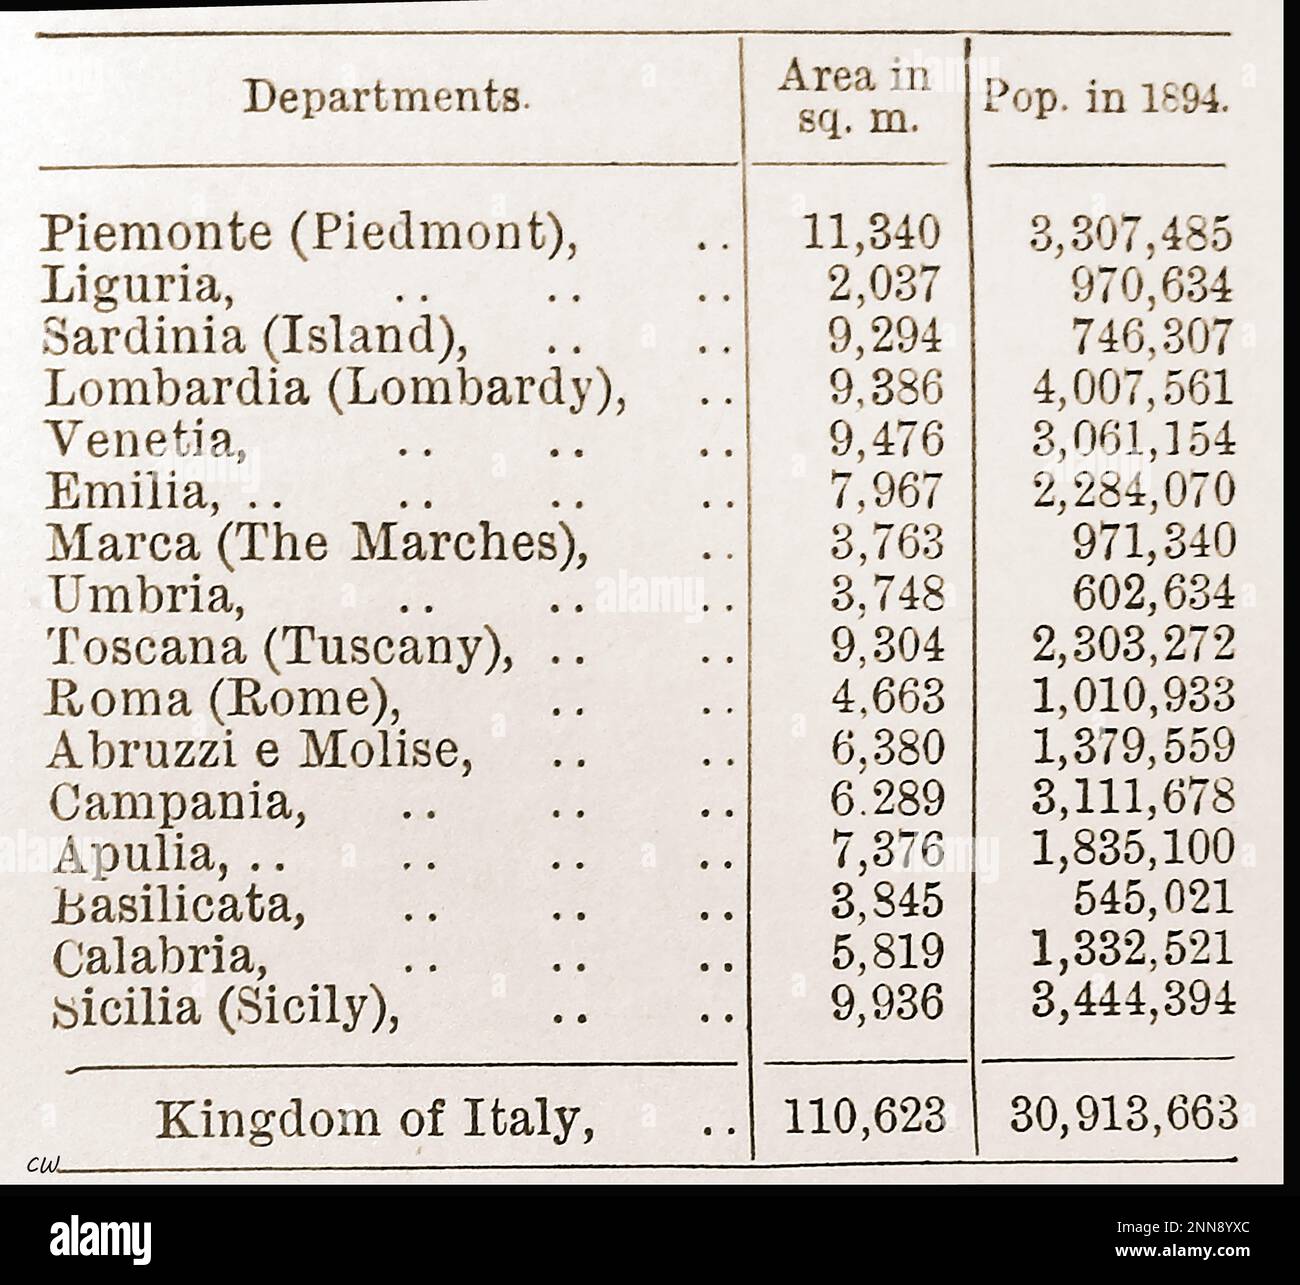 1894 - Un graphique montrant la population de divers départements du Royaume d'Italie ainsi que les zones en mètres carrés. Banque D'Images